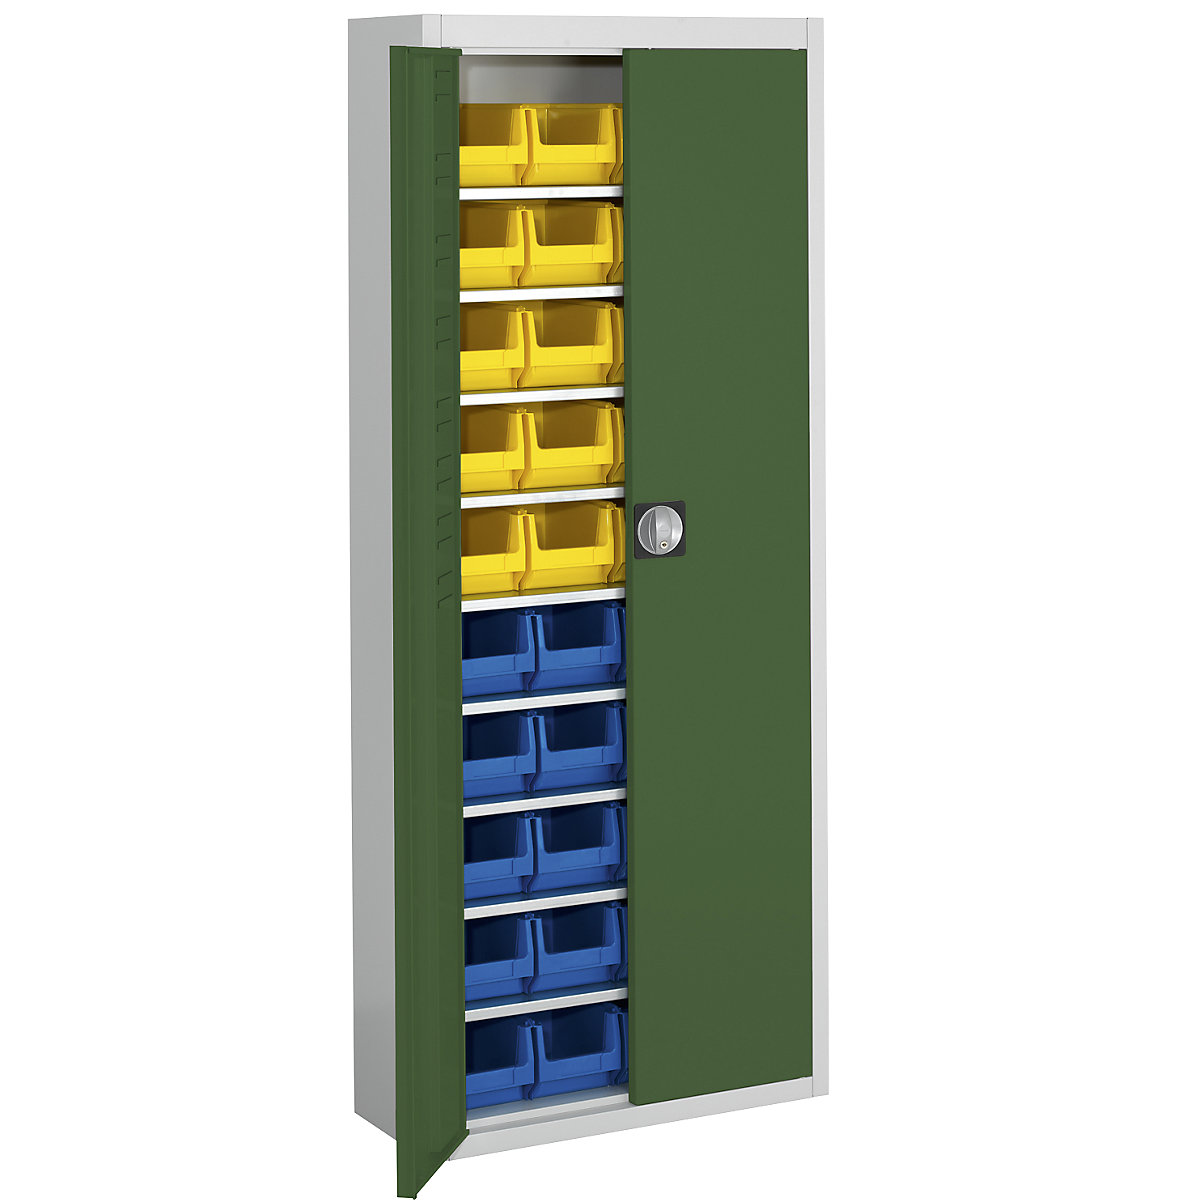 Skladišni ormar s otvorenim skladišnim kutijama – mauser, VxŠxD 1740 x 680 x 280 mm, u dvije boje, korpus u sivoj boji, vrata u zelenoj boji, 40 kutija-13